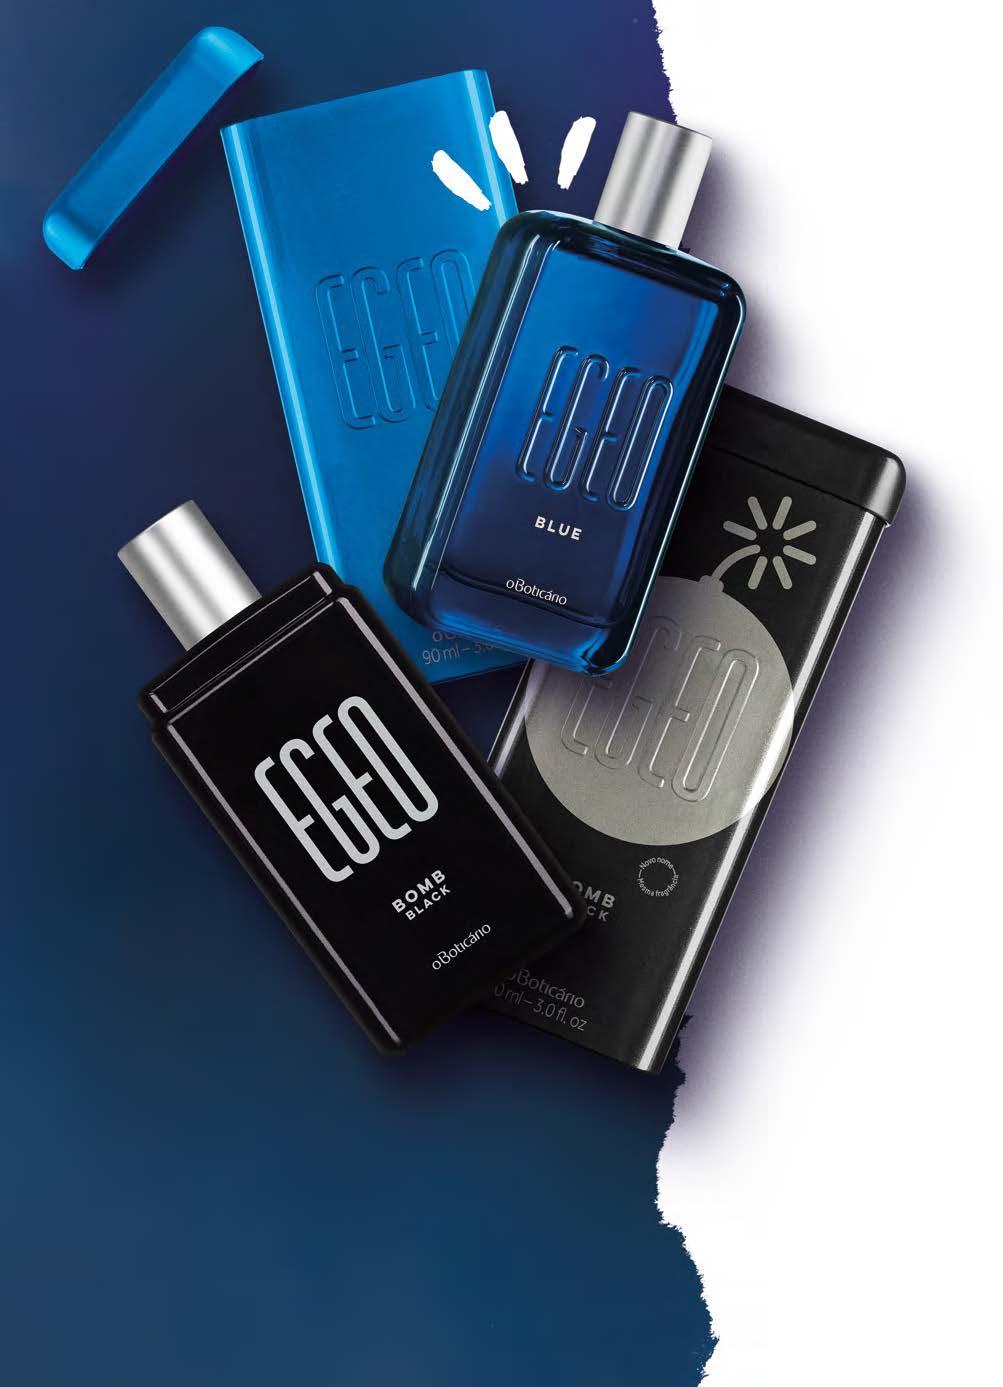 PERFUMARIA EGEO EGEO BLUE COLÔNIA, 90 ml 24455 R$ 99,90 Uma fragrância deliciosa, que torna inevitável a vontade de chegar mais perto.